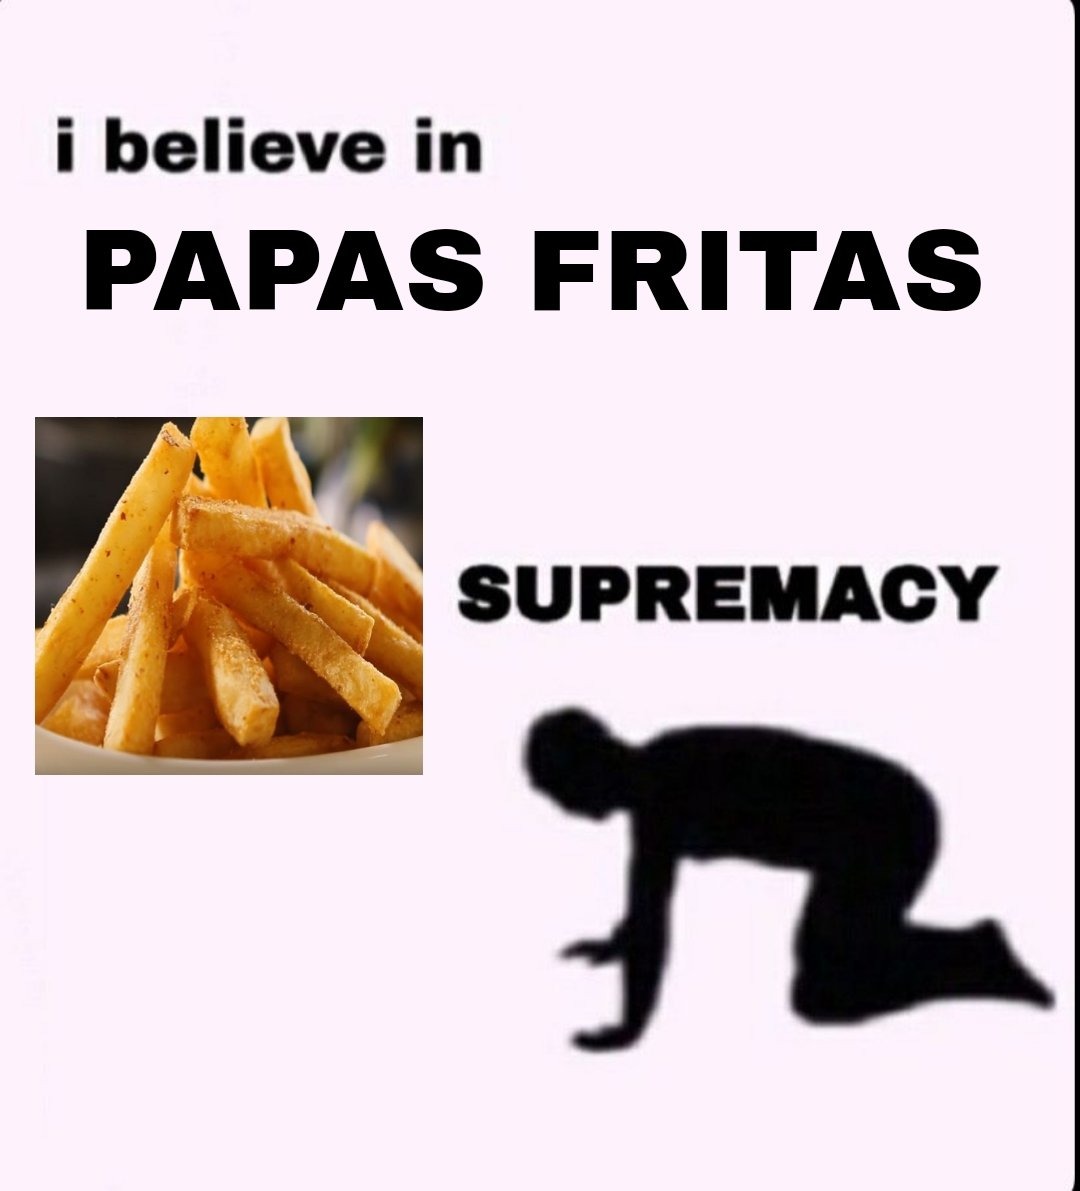 Papas fritas>>>>hamburguesas - meme